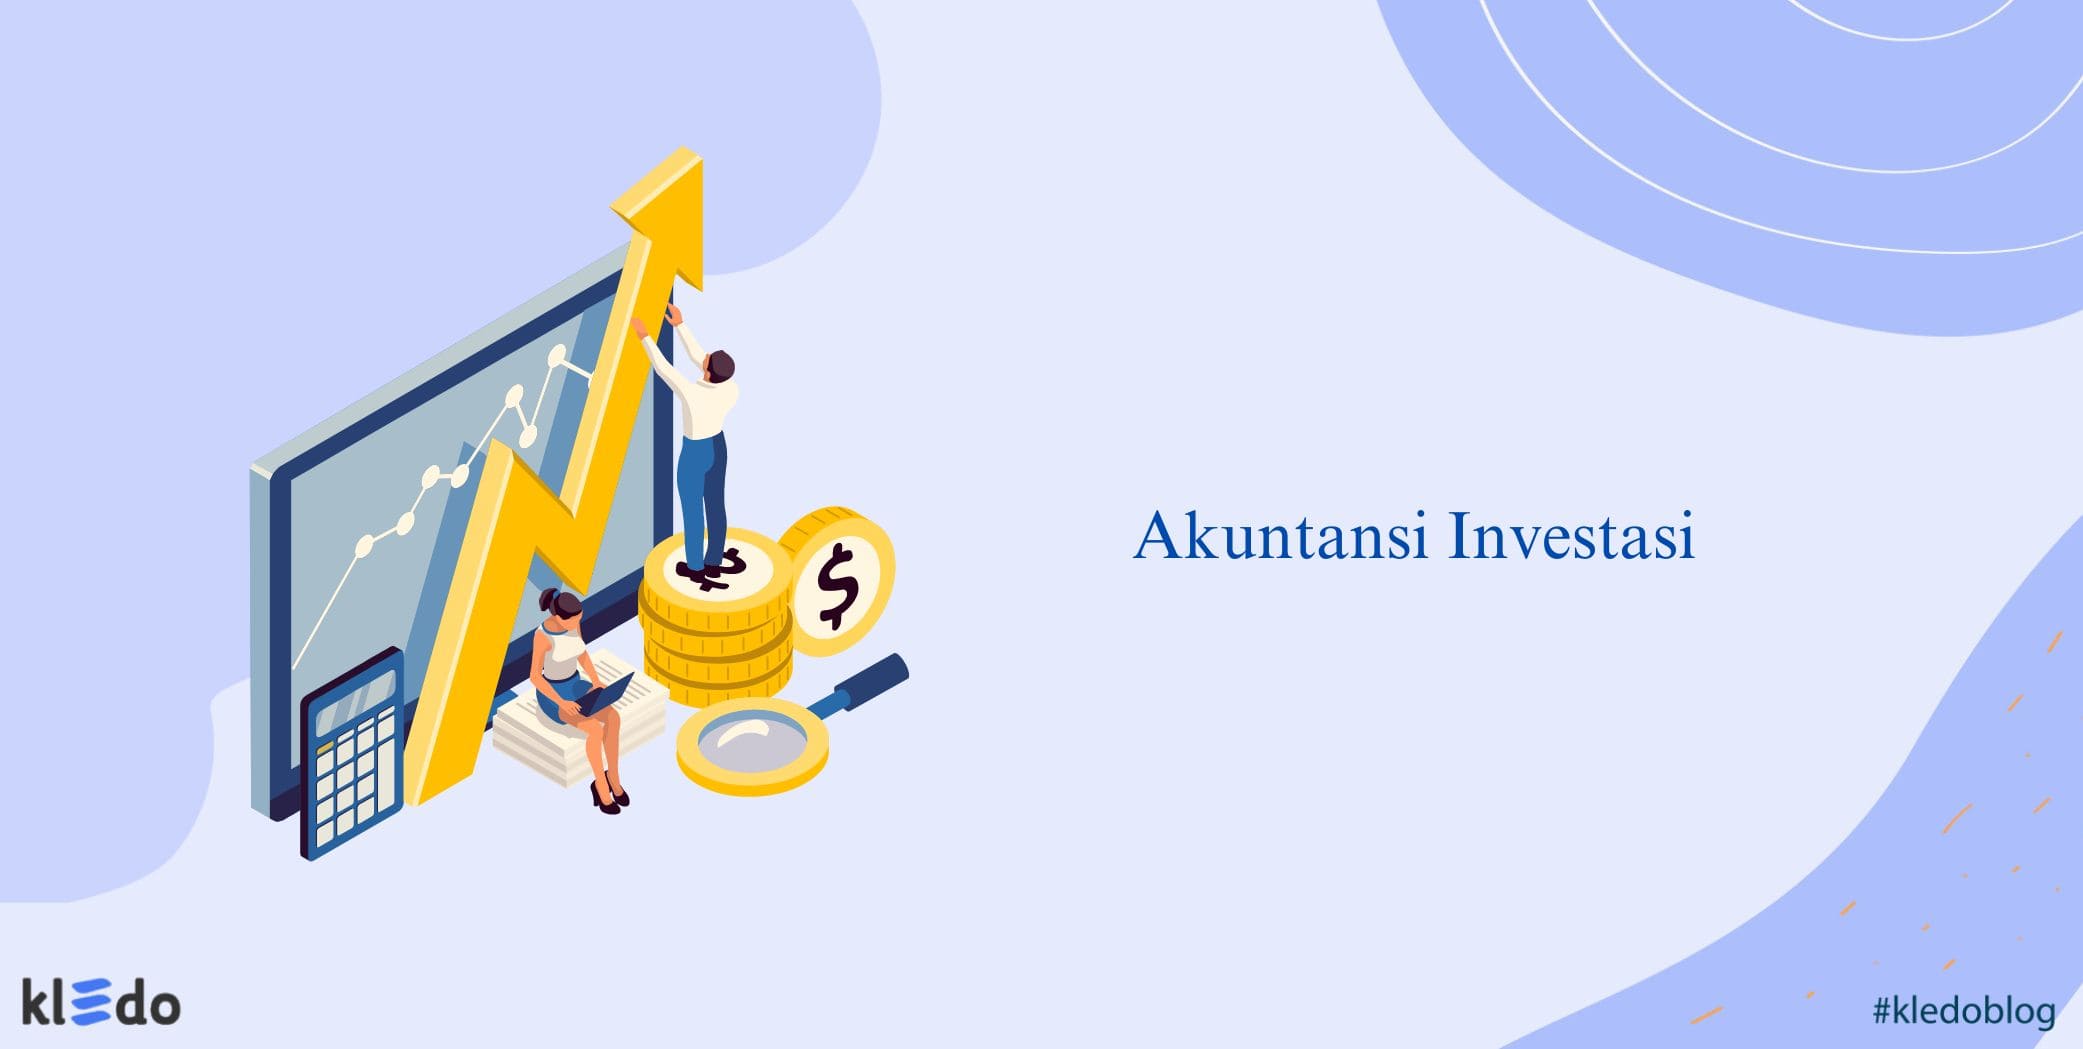 Akuntansi Investasi: Panduan Lengkap dan Terperinci